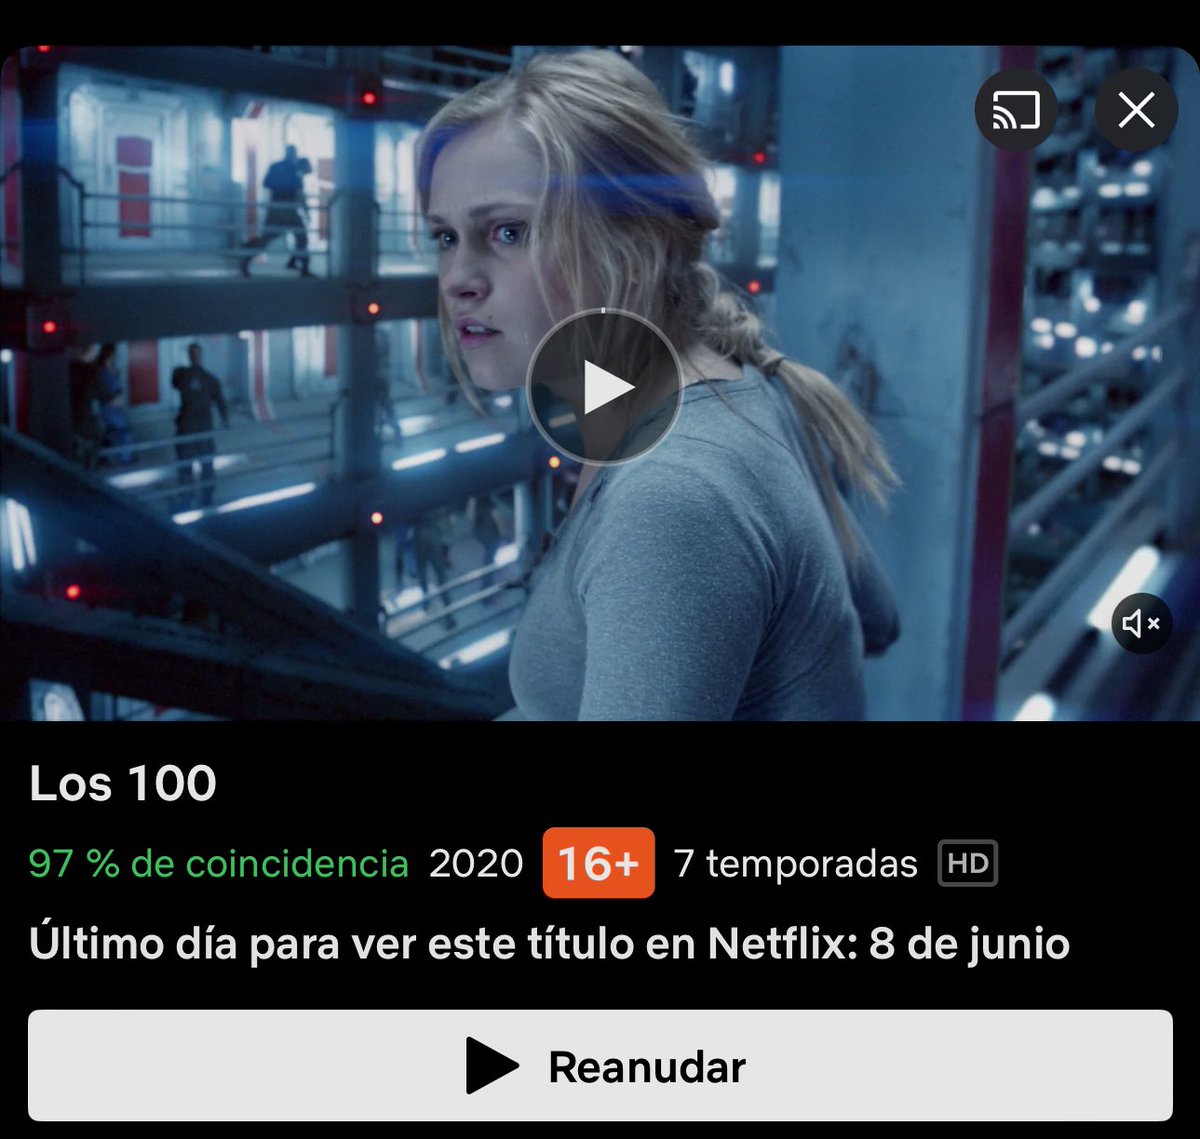 #The100 #Los100

⚠️ATENCIÓN⚠️

Se termina el acuerdo:

La serie dejará @NetflixES el próximo 8 de junio y las 7T ya no estarán disponibles en el catálogo español este verano.